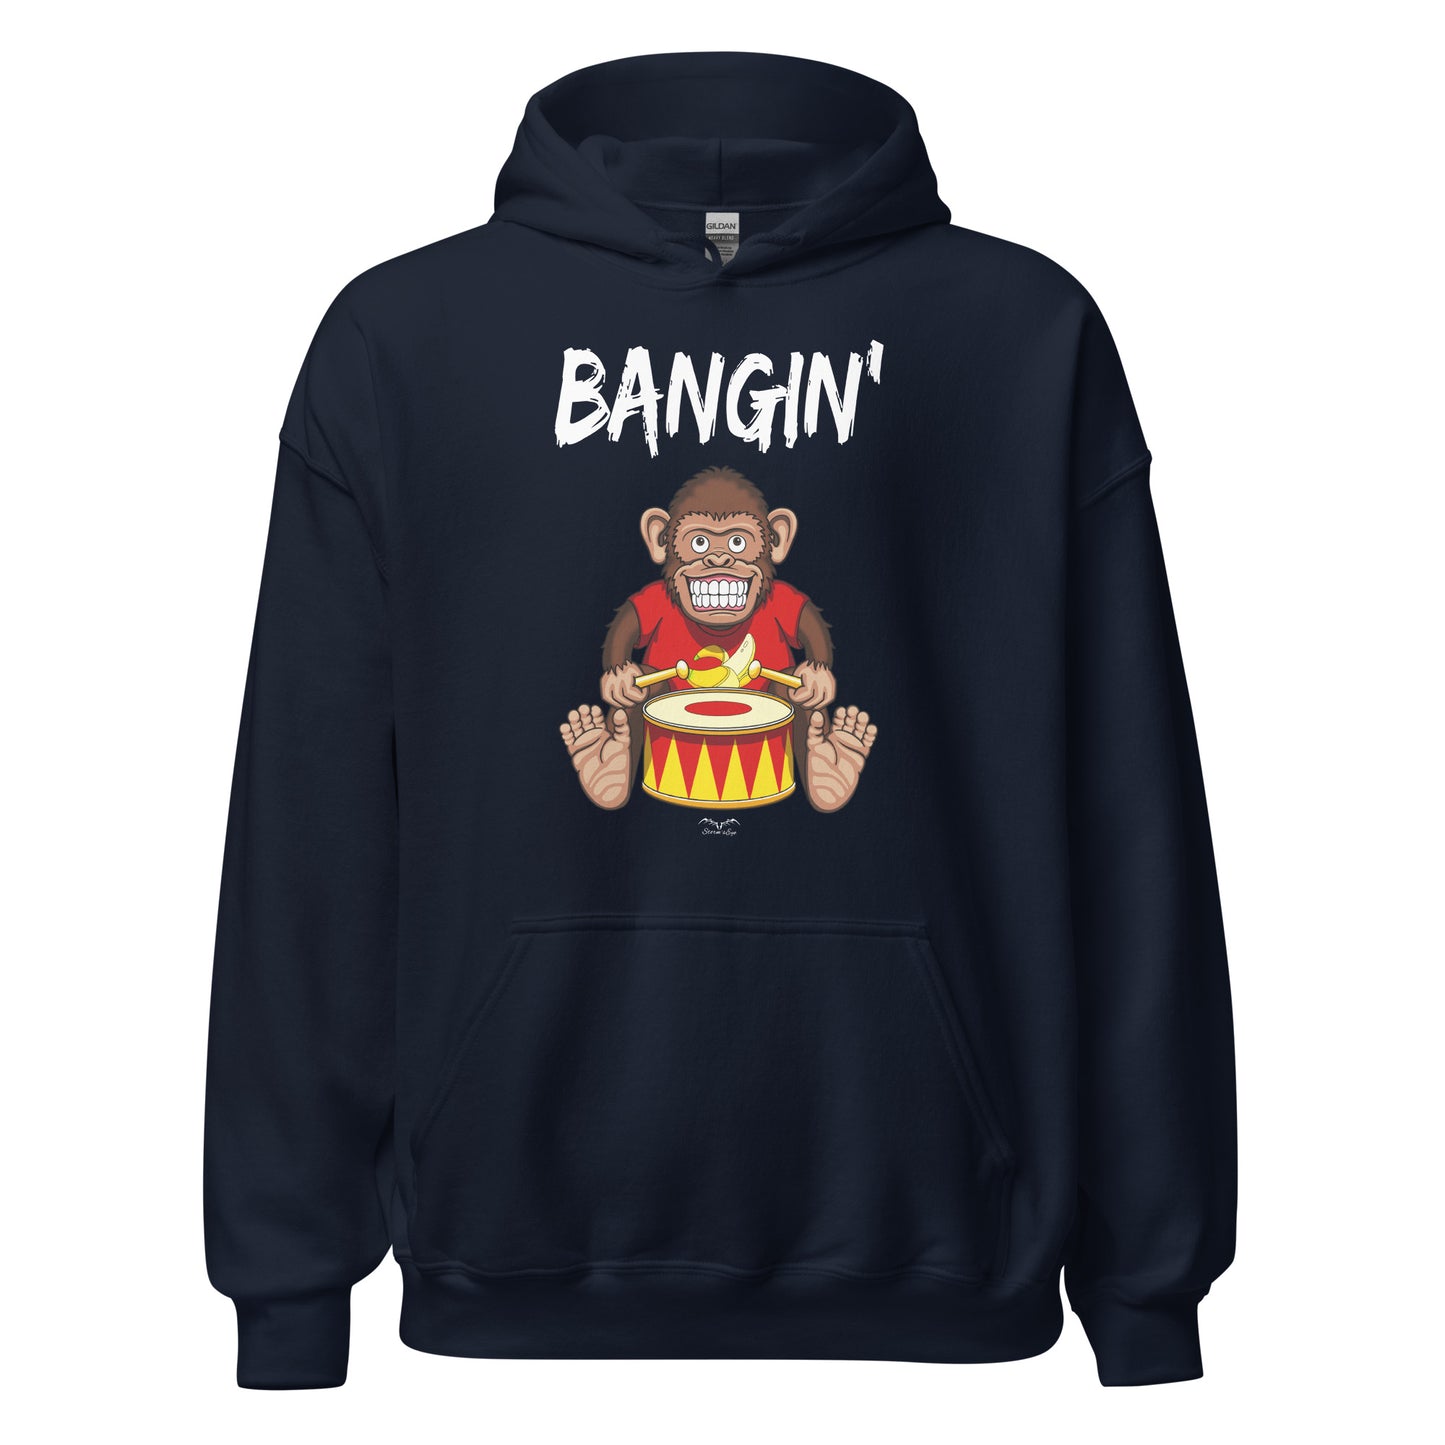 Bangin drummer monkey hoodie, navy blue, by Stormseye Design